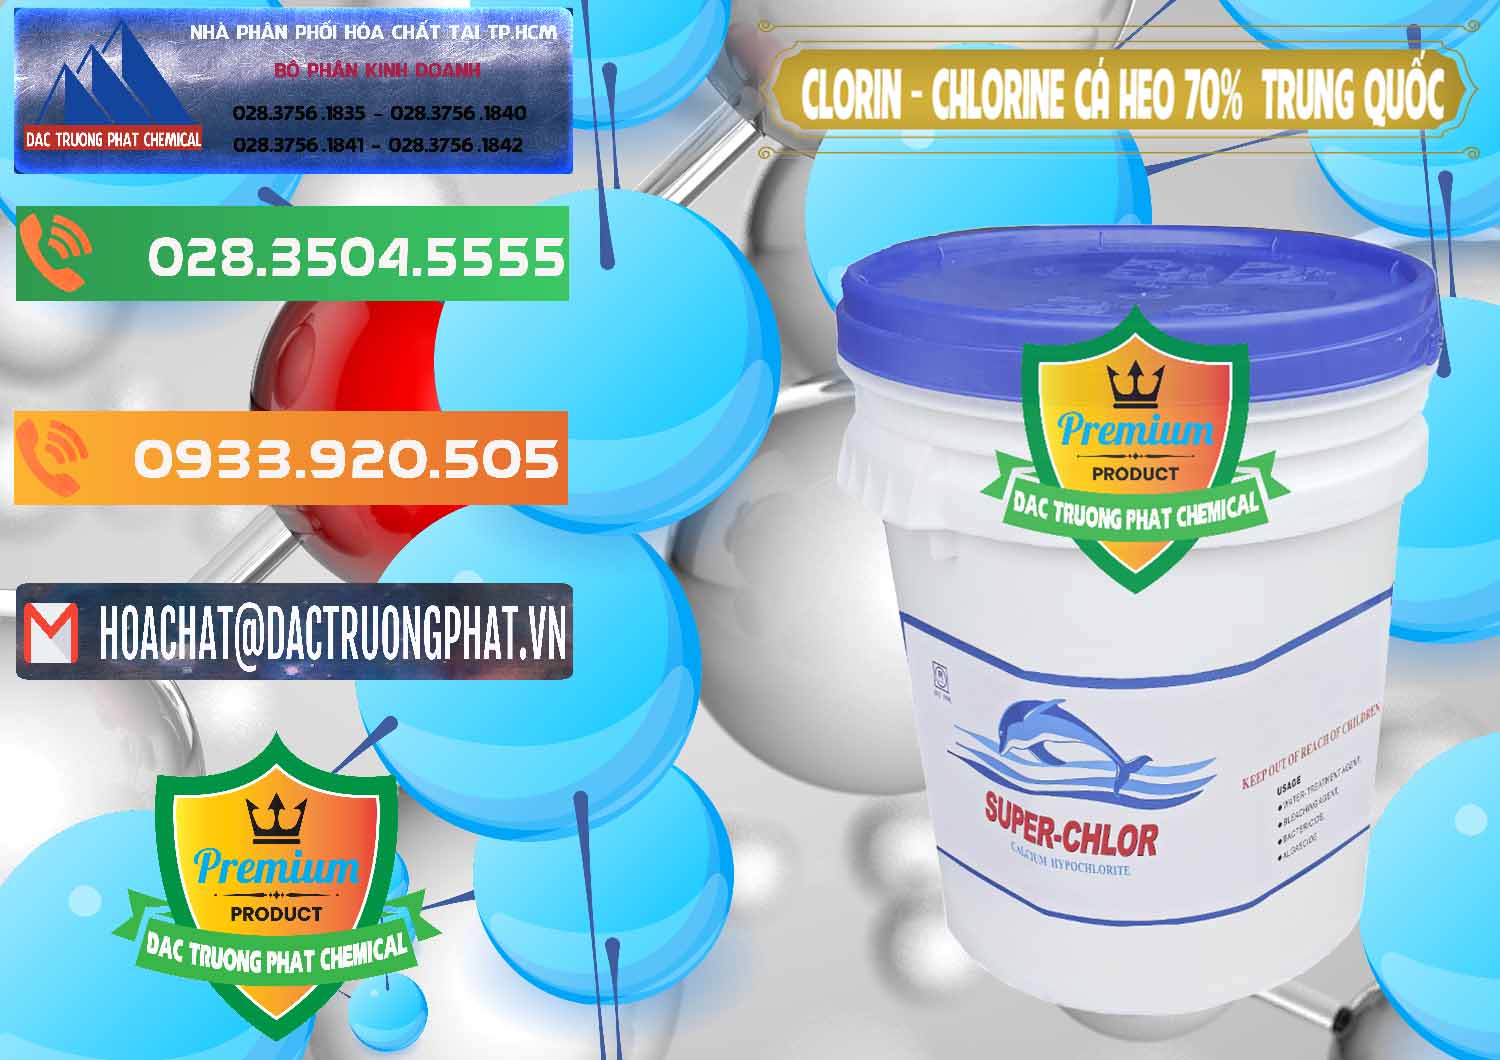 Đơn vị chuyên bán ( cung ứng ) Clorin - Chlorine Cá Heo 70% Super Chlor Nắp Xanh Trung Quốc China - 0209 - Chuyên cung cấp và bán hóa chất tại TP.HCM - hoachatxulynuoc.com.vn